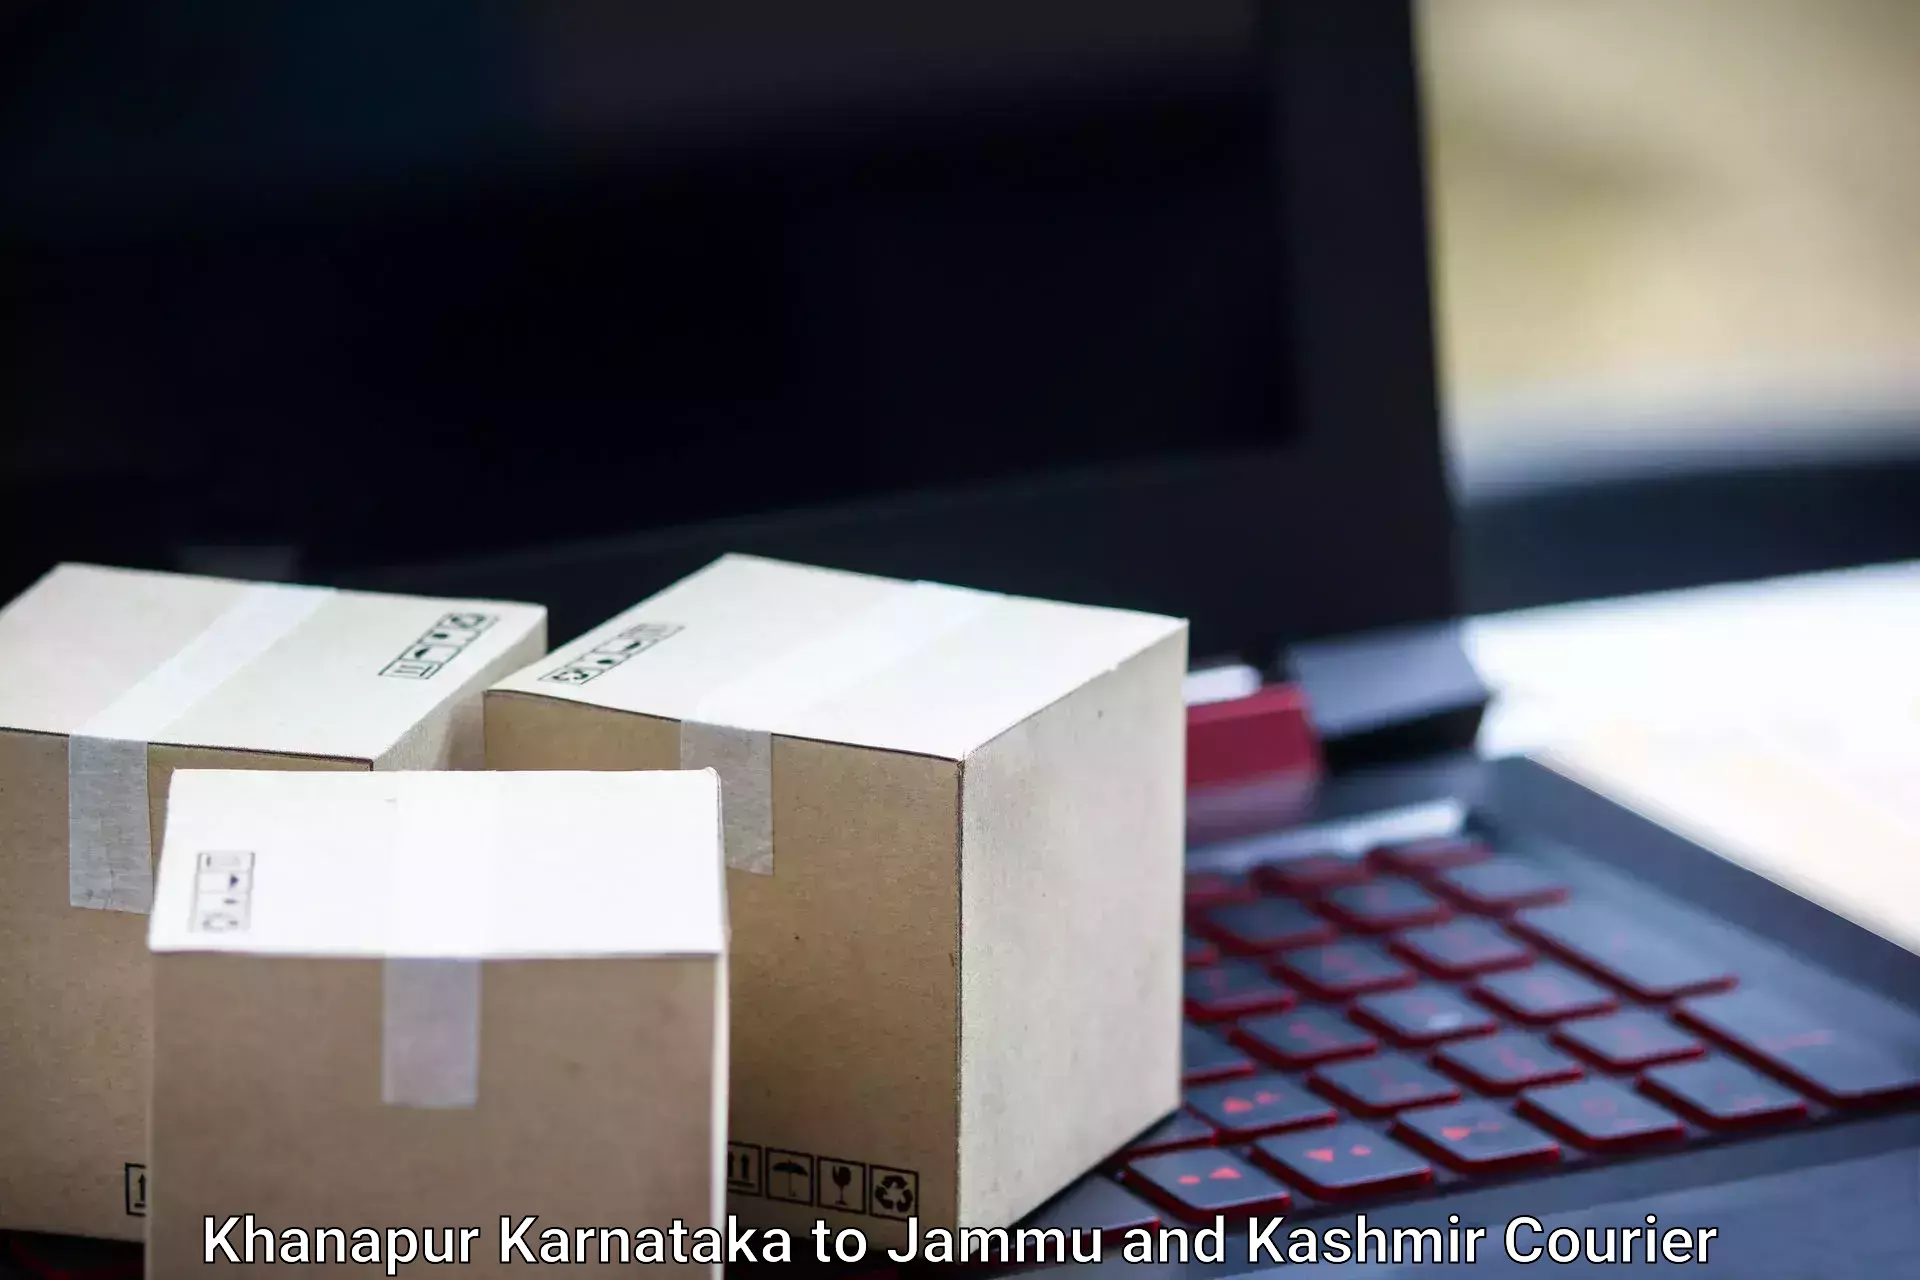 Luggage dispatch service Khanapur Karnataka to University of Kashmir Srinagar